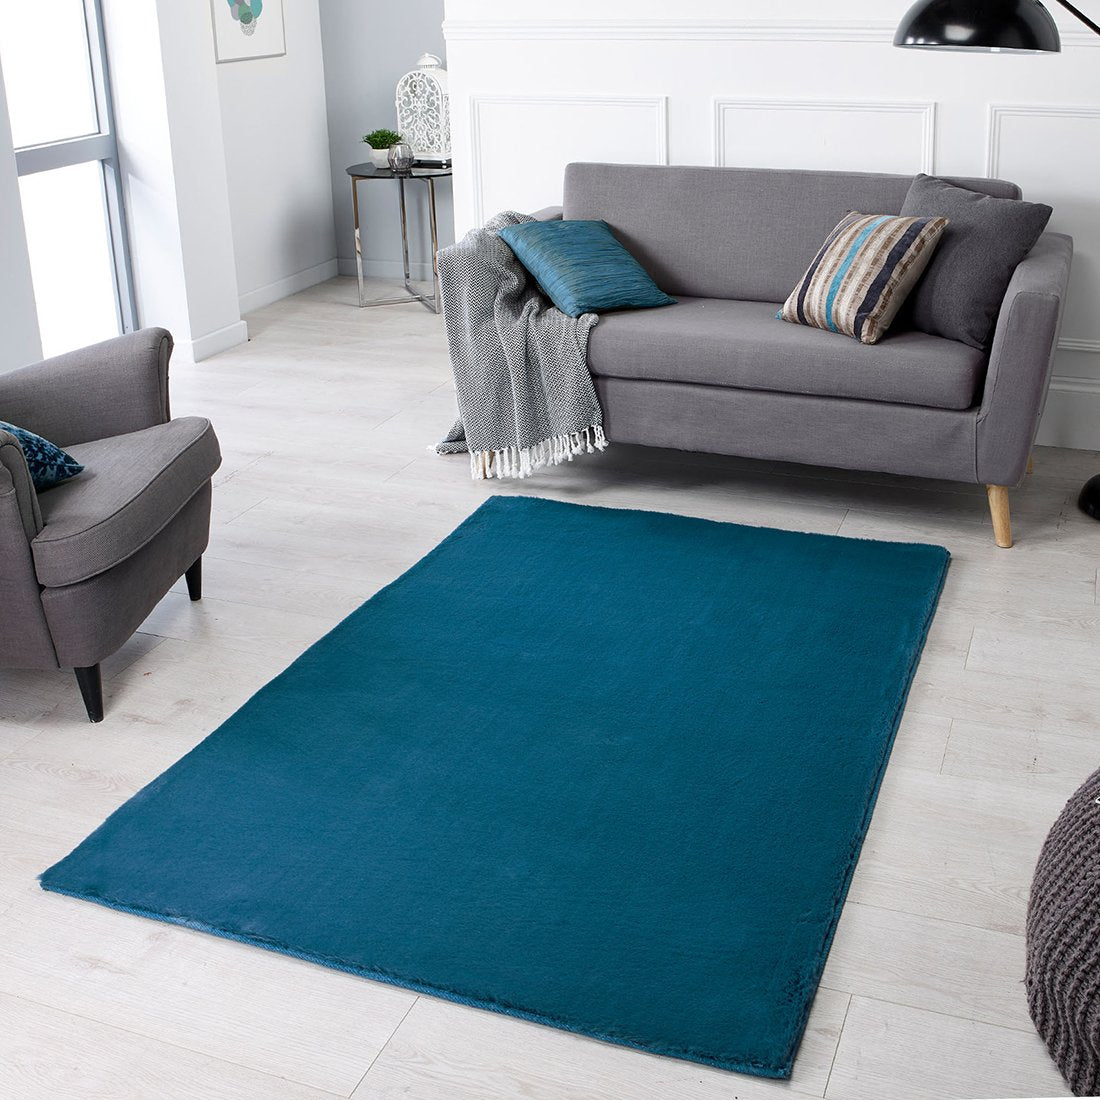 Teal Rug Super Soft Blue Plain Living Room Bedroom Carpet Short Pile A ...